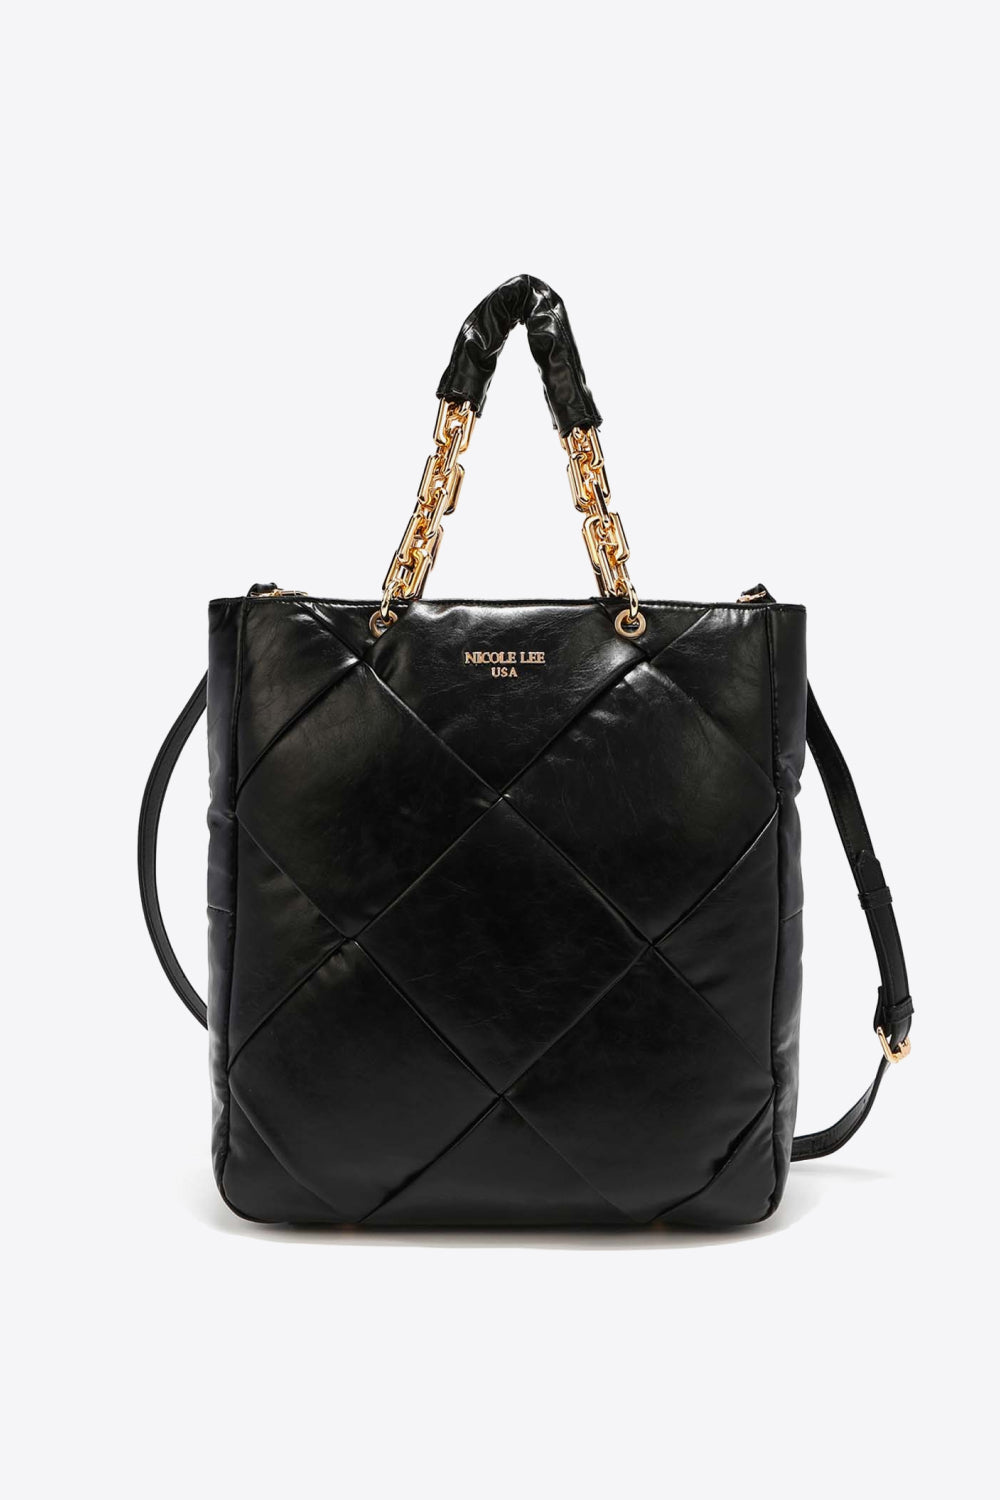 Nicole Lee USA Mesmerize Handbag | BAGS & ACCESSORIES | Bags, Bags & Luggage, handbags, Nicole Lee USA, Ship from USA | Trendsi